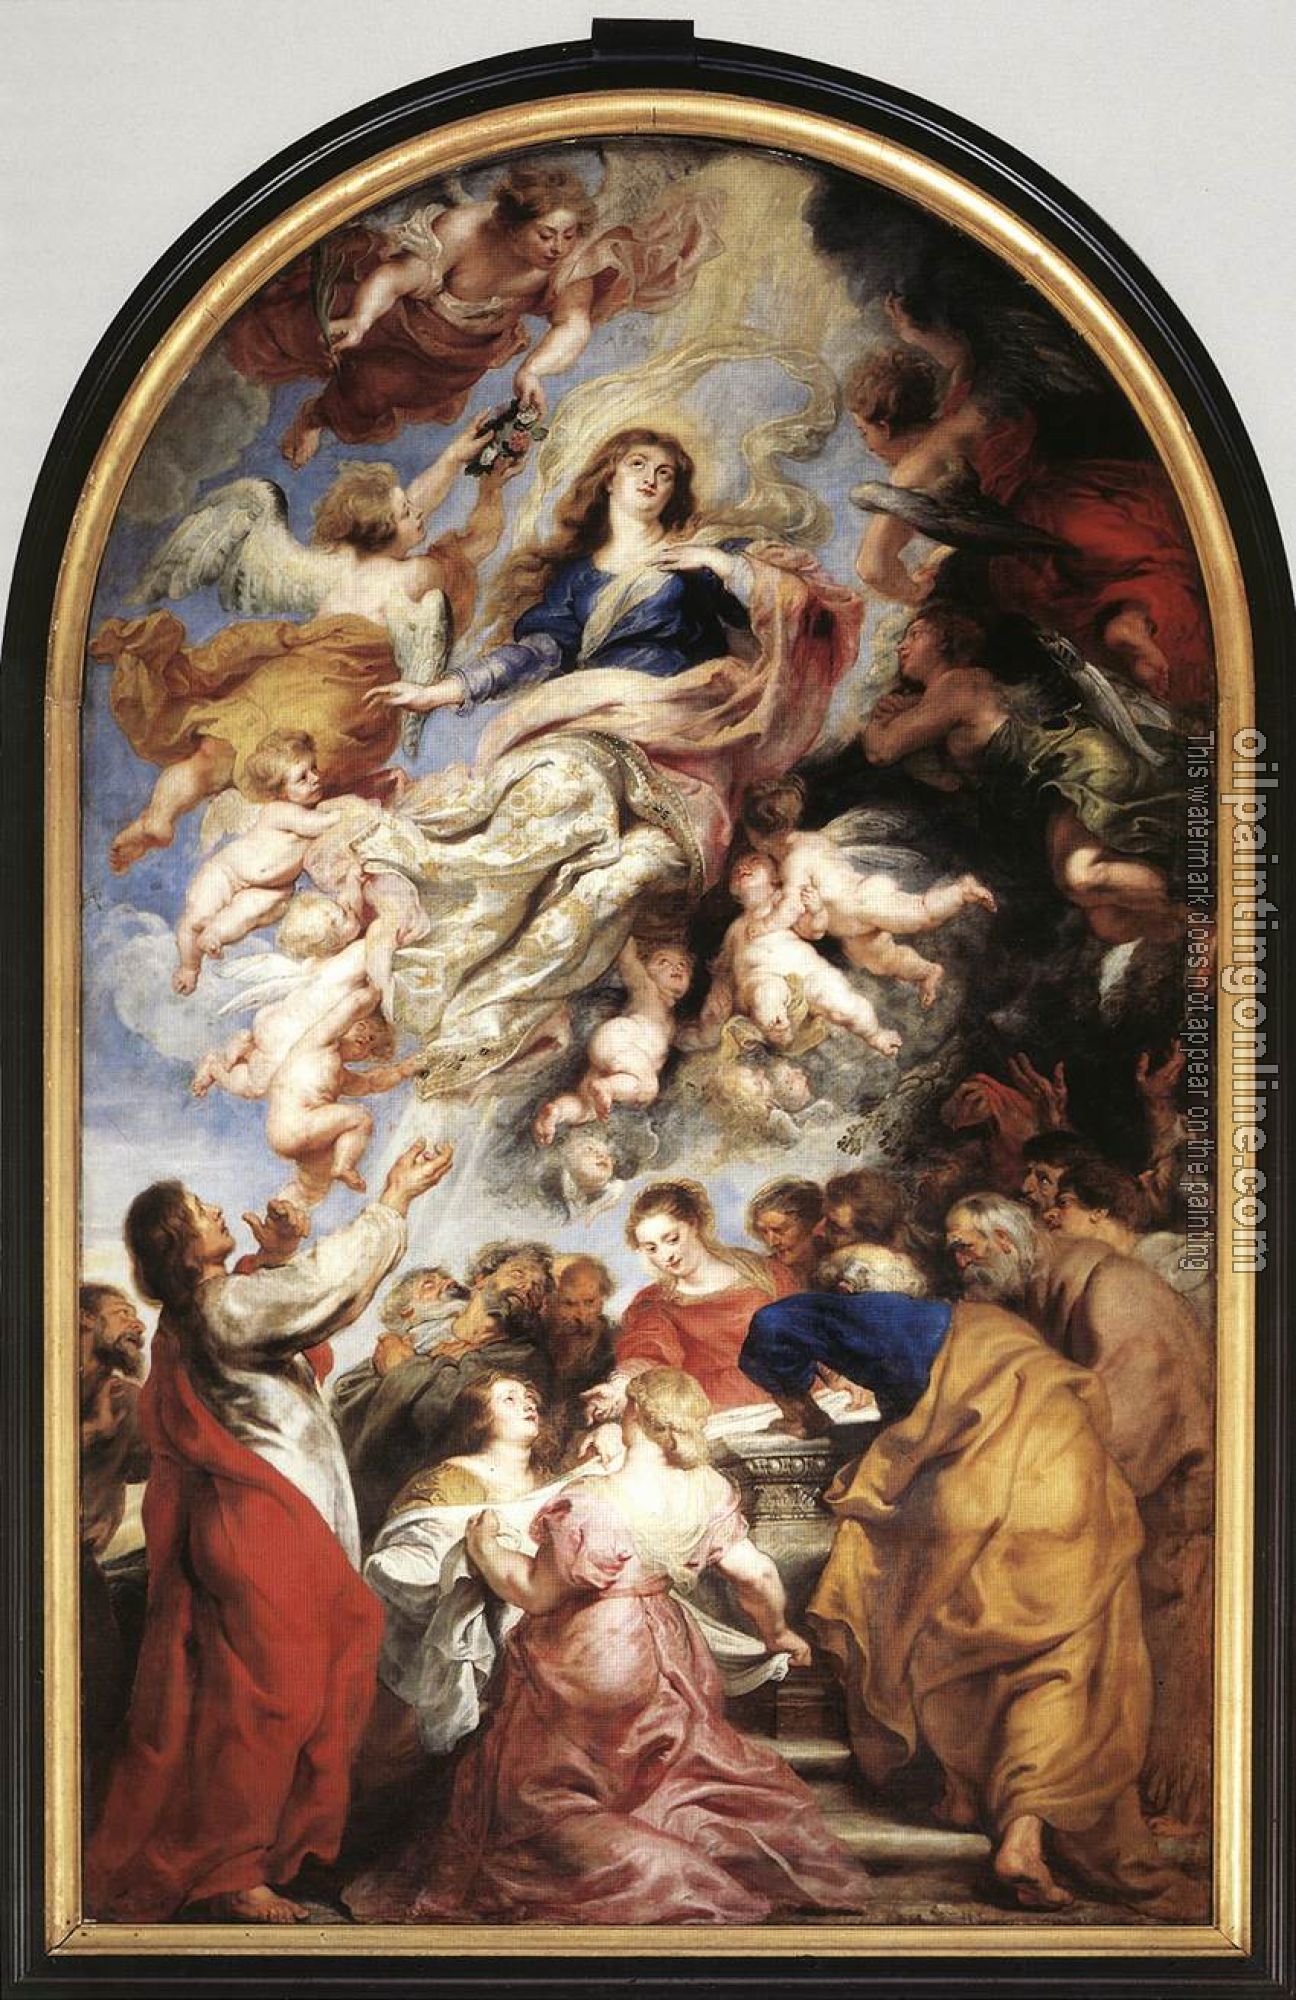 Rubens, Peter Paul - Assumption of the Virgin